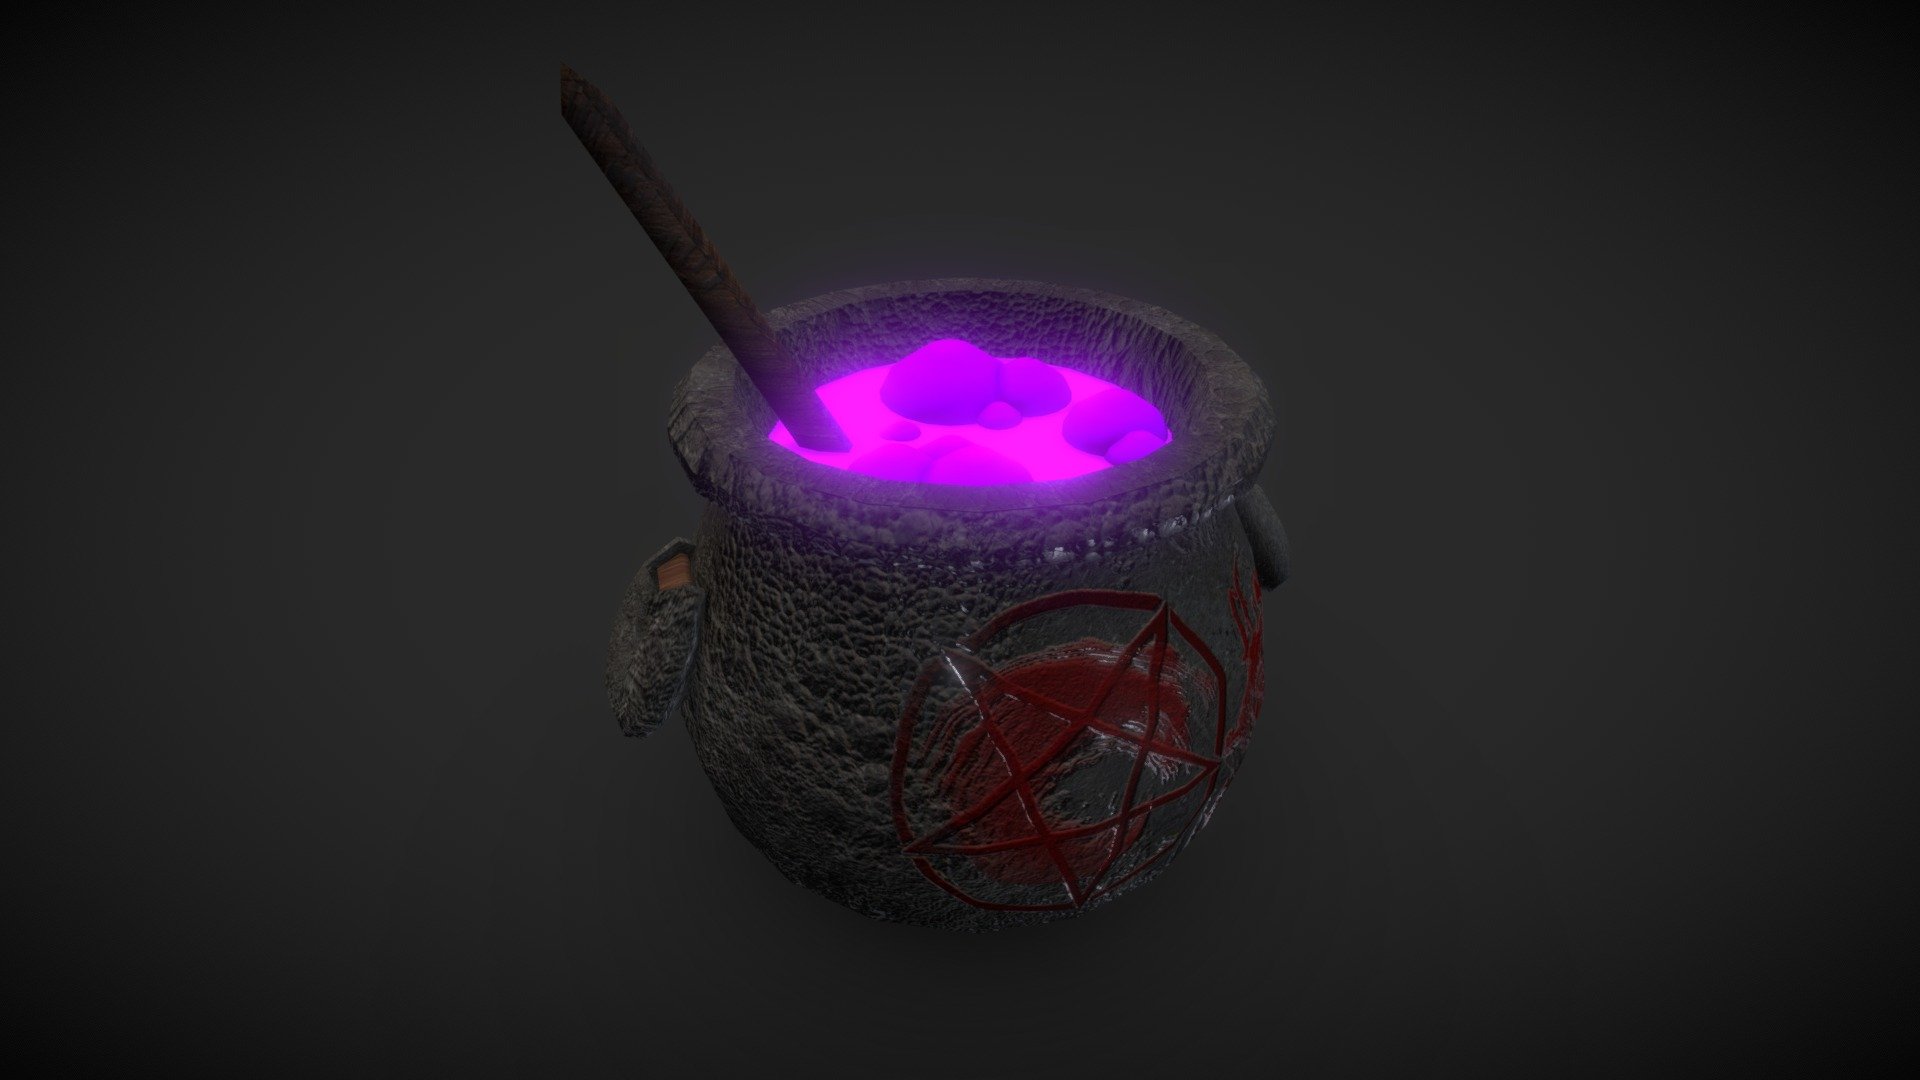 Witch Pot